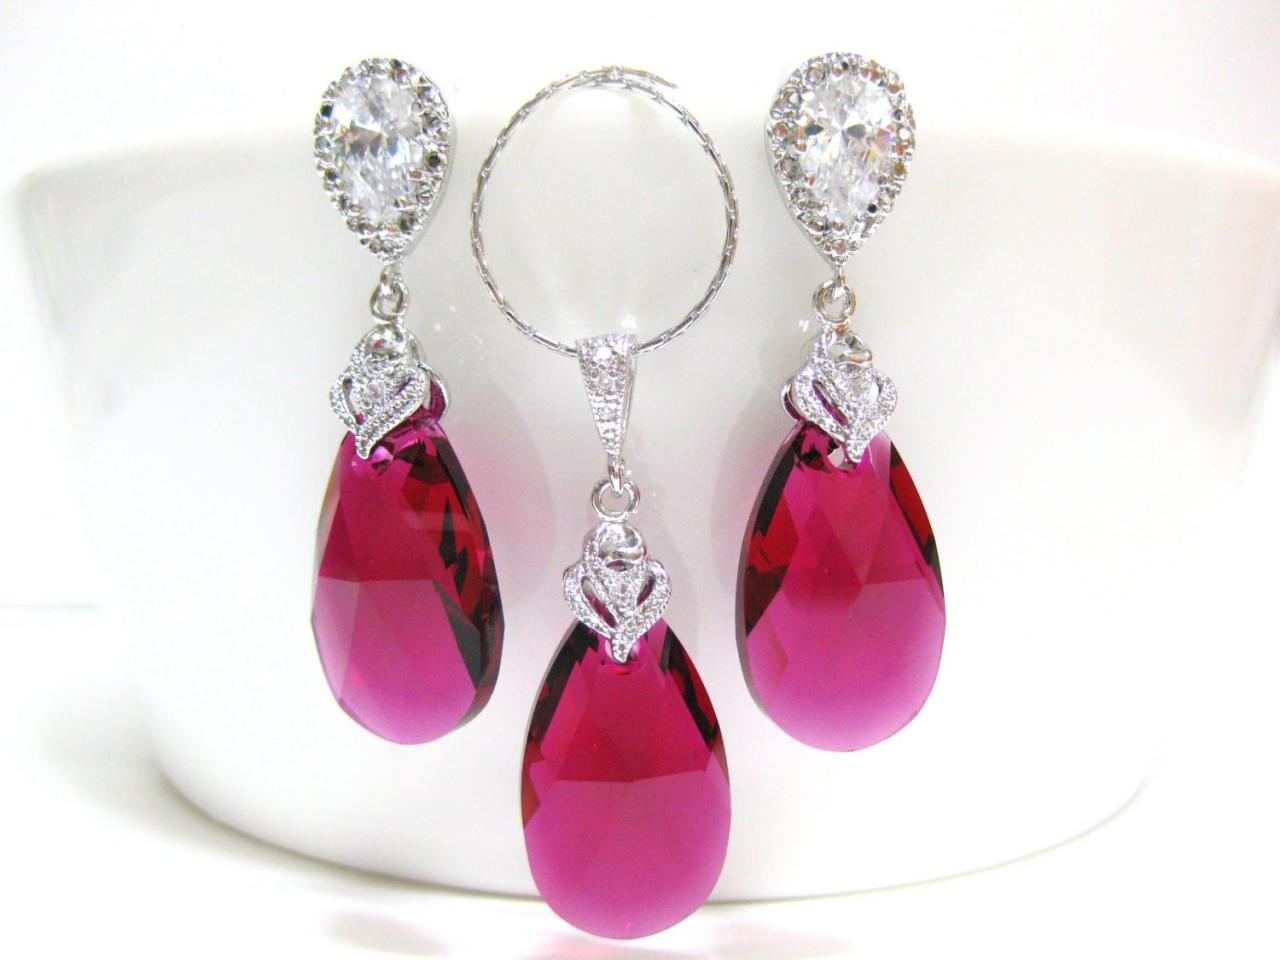 Ruby Crystal Earrings & Necklace Gift Set Swarovski Fuchsia Teardrop Pink Earrings Wedding Jewelry Bridal Jewelry Red Earrings (ne027)